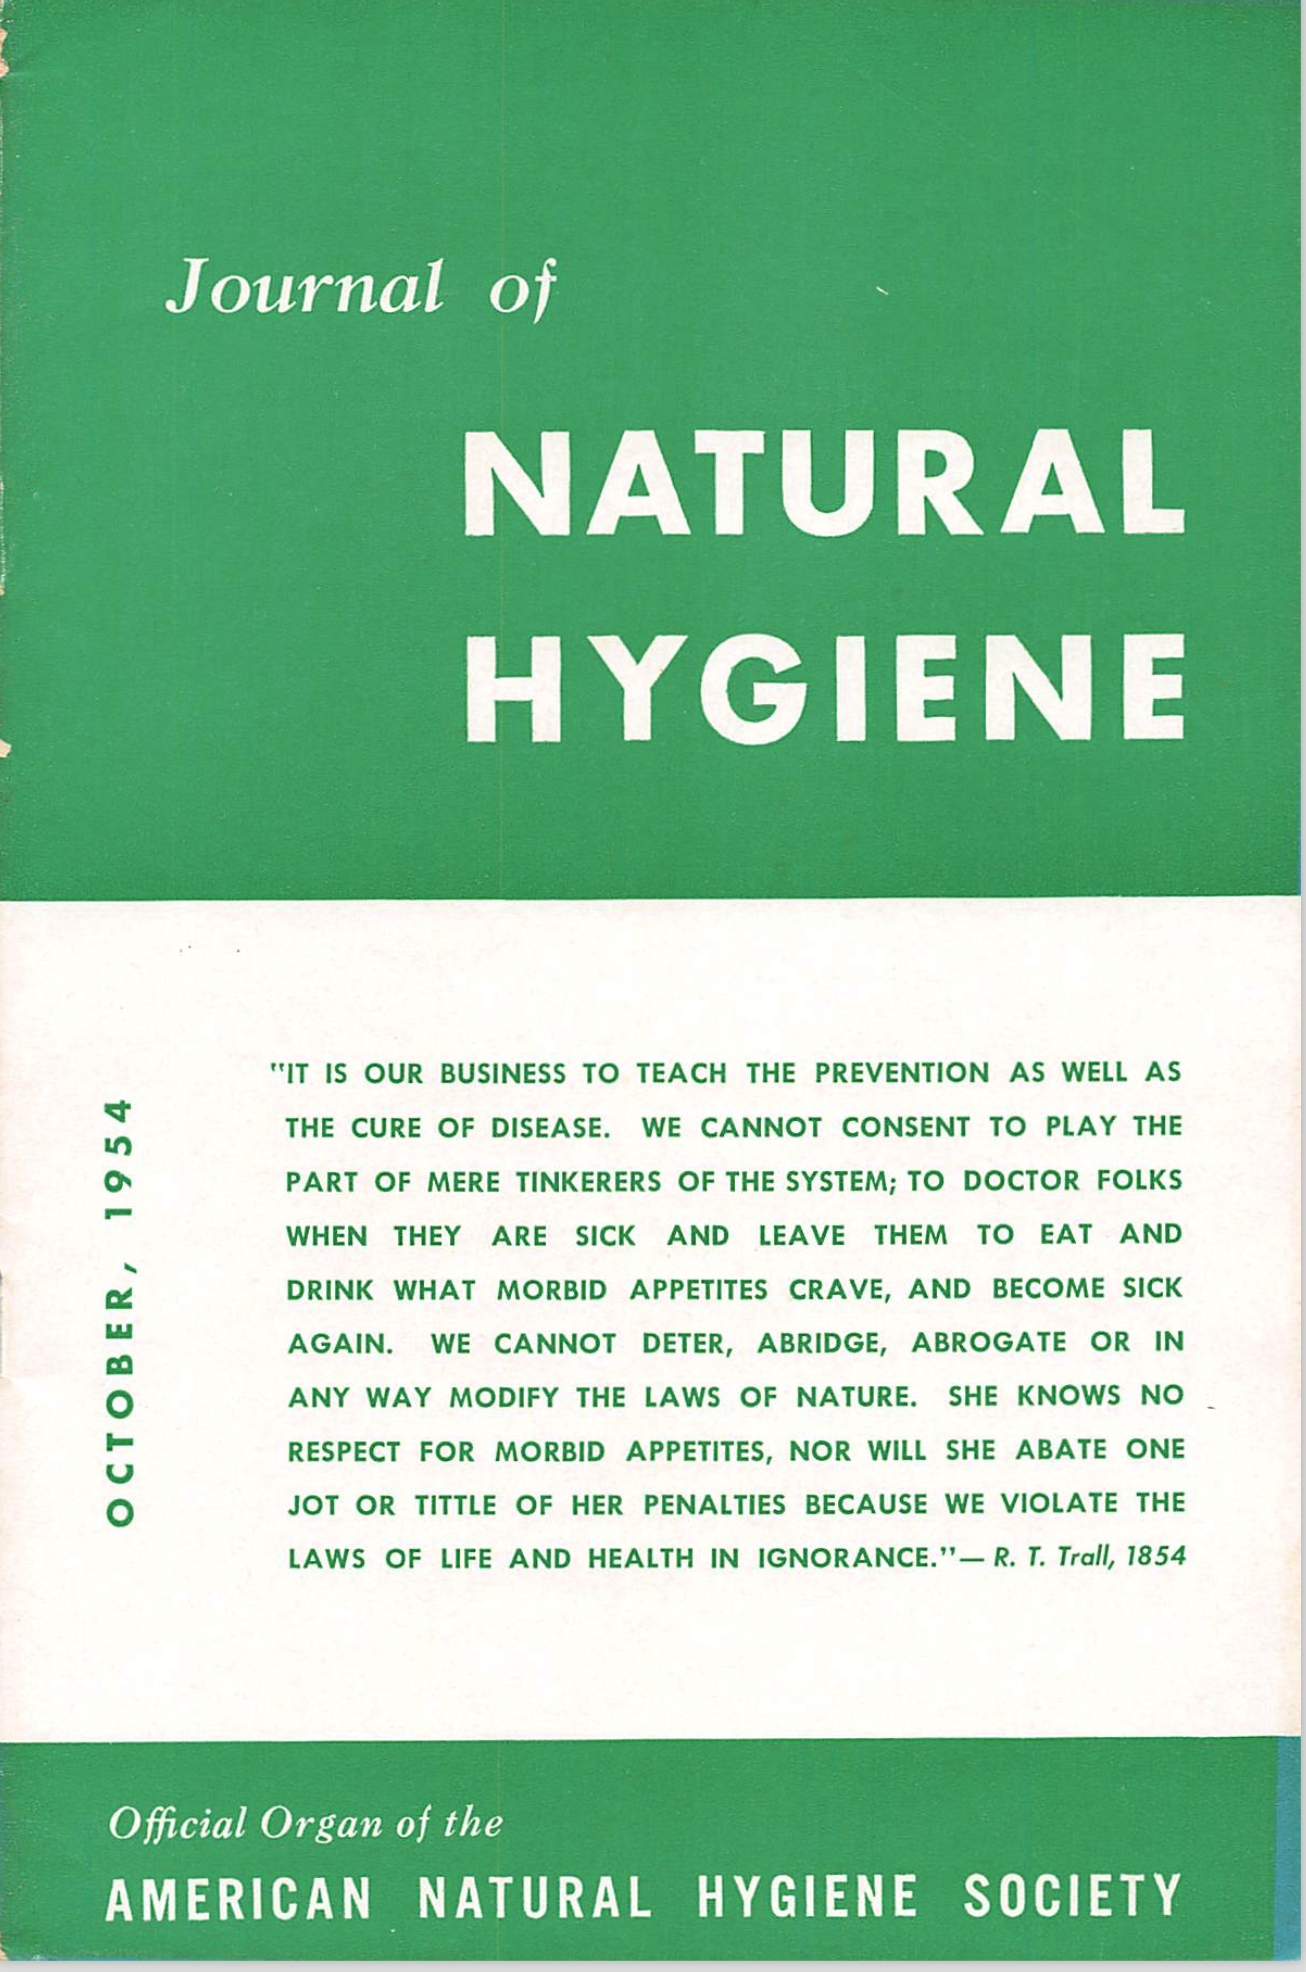 Journal of Natural Hygiene October 1954